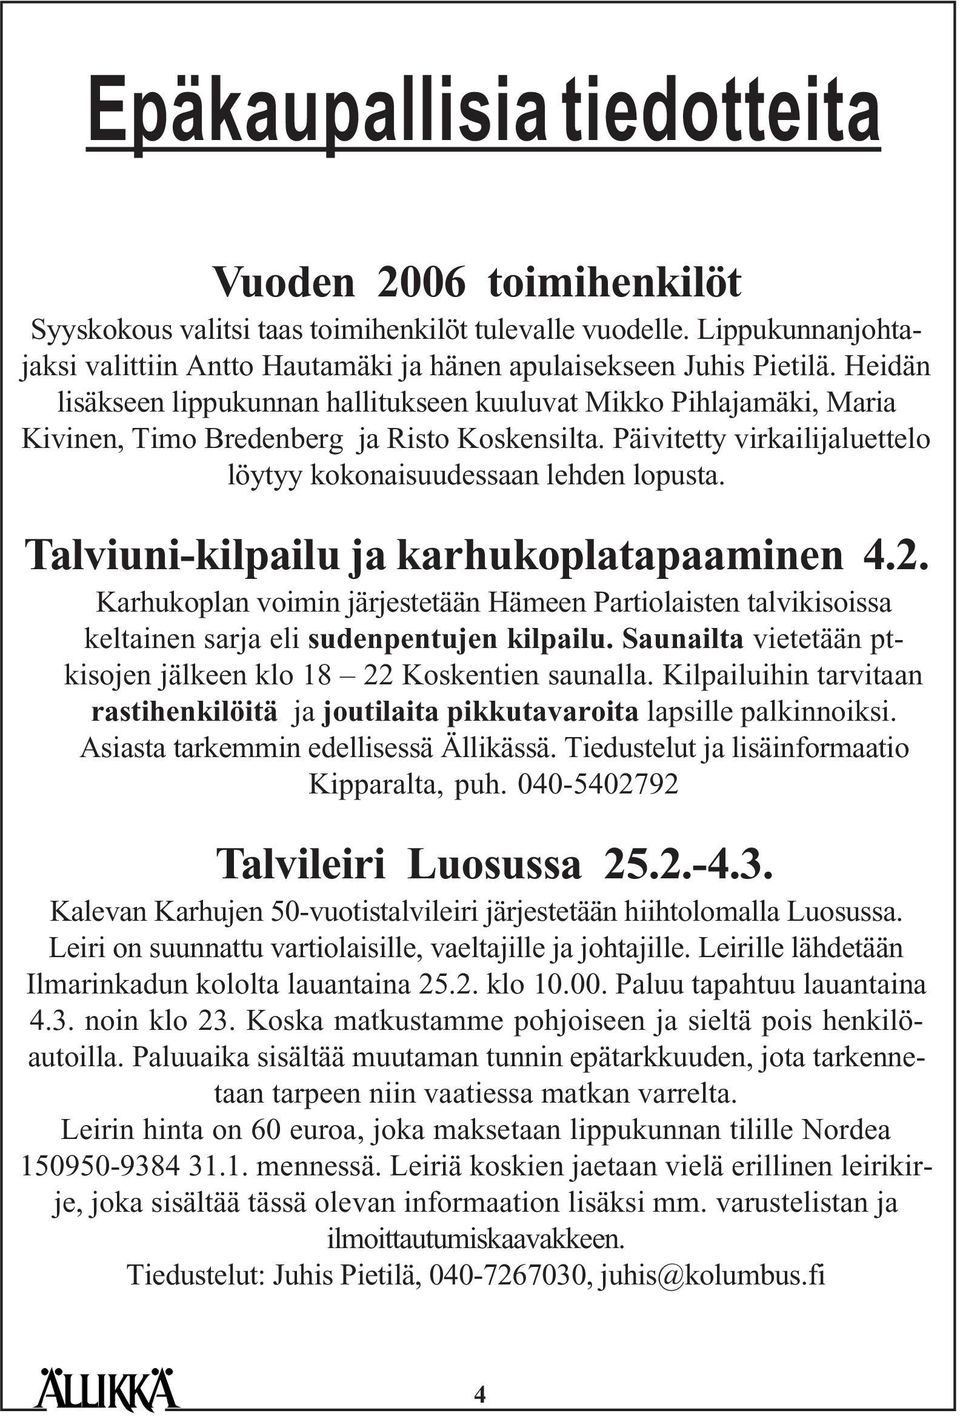 Talviuni-kilpailu ja karhukoplatapaaminen 4.2. Karhukoplan voimin järjestetään Hämeen Partiolaisten talvikisoissa keltainen sarja eli sudenpentujen kilpailu.